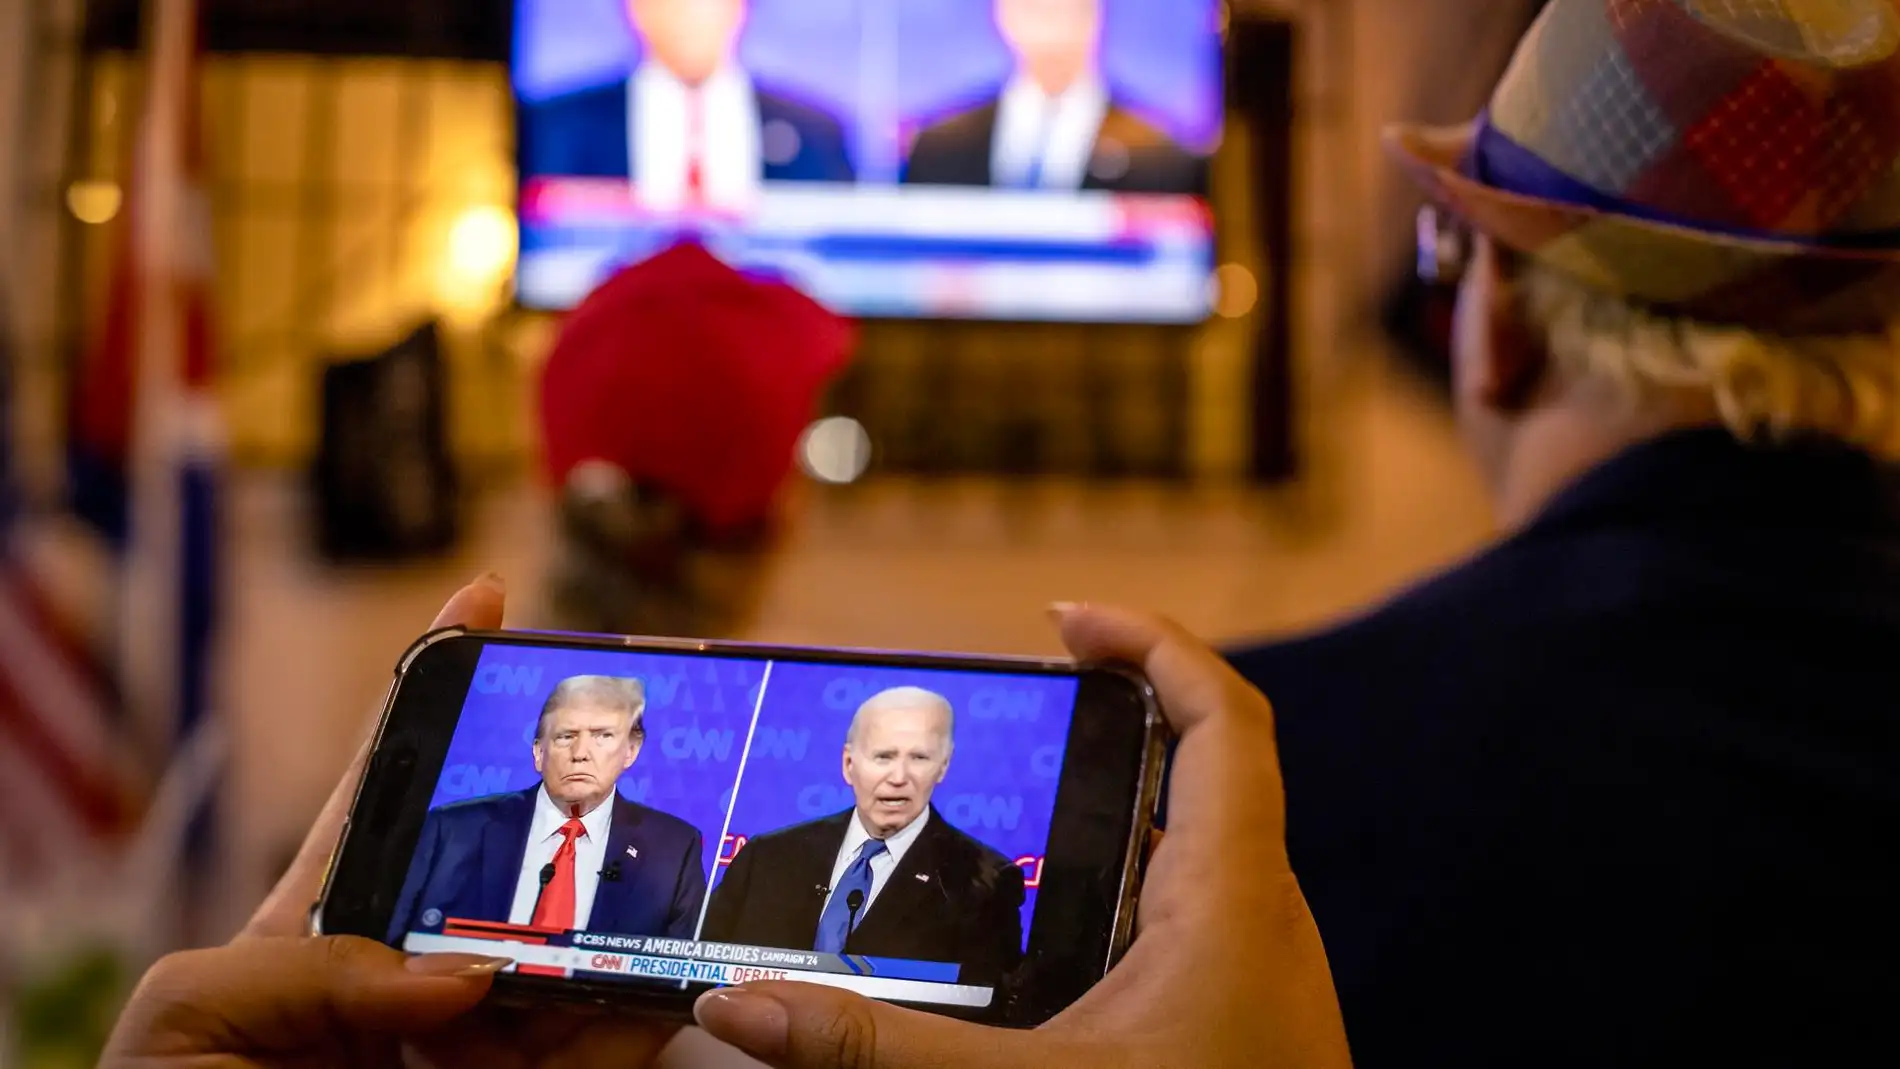 Los momentos clave de un debate marcado por la debilidad y los lapsus de  Biden y las mentiras de Trump | Onda Cero Radio